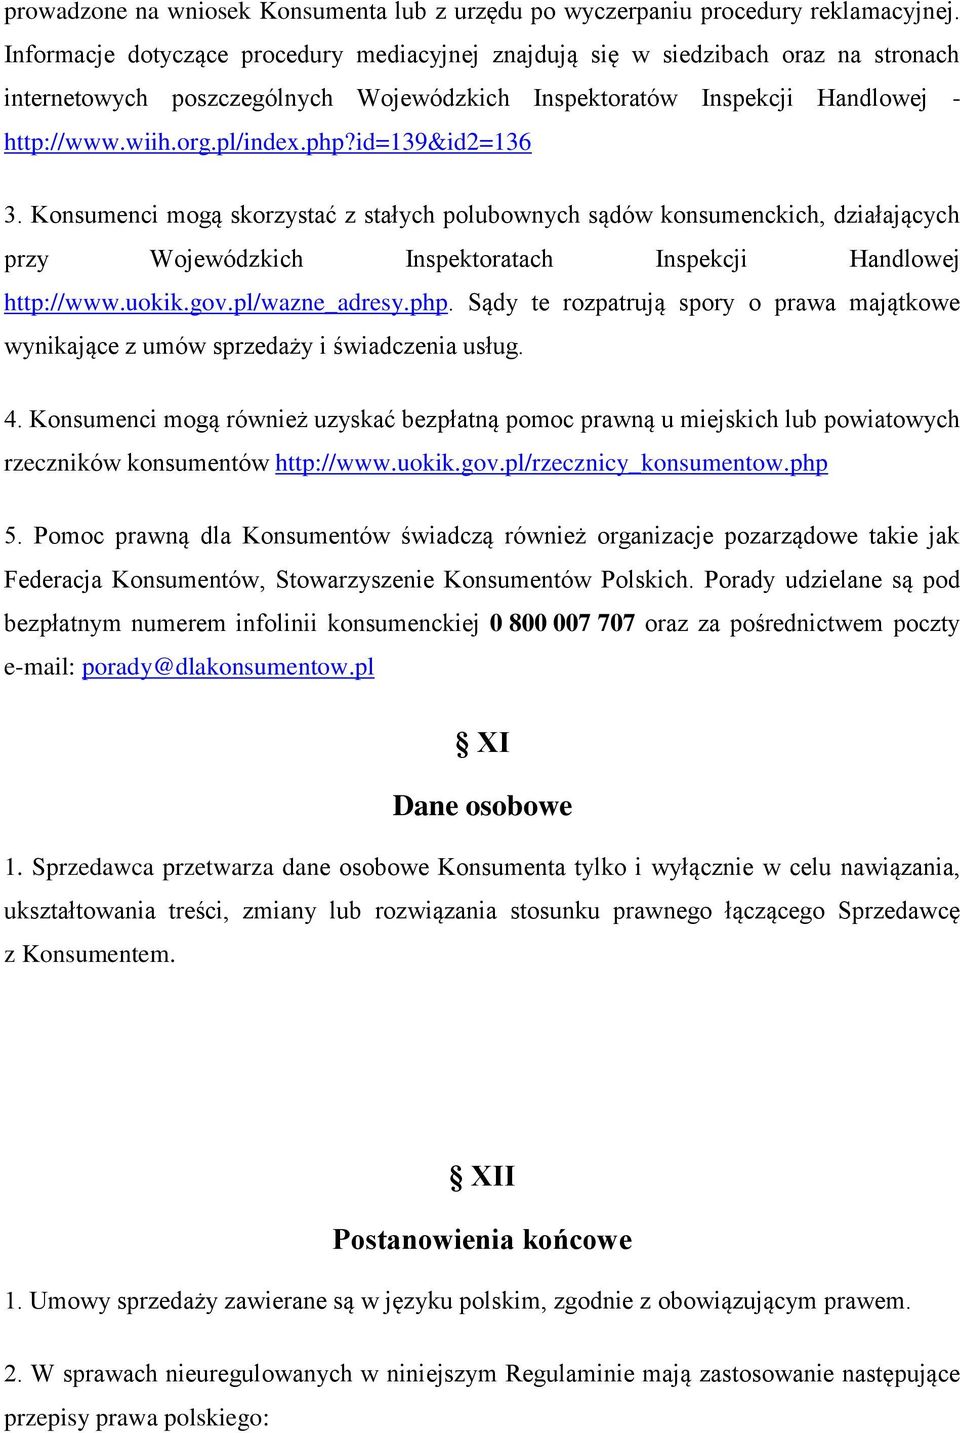 id=139&id2=136 3. Konsumenci mogą skorzystać z stałych polubownych sądów konsumenckich, działających przy Wojewódzkich Inspektoratach Inspekcji Handlowej http://www.uokik.gov.pl/wazne_adresy.php.